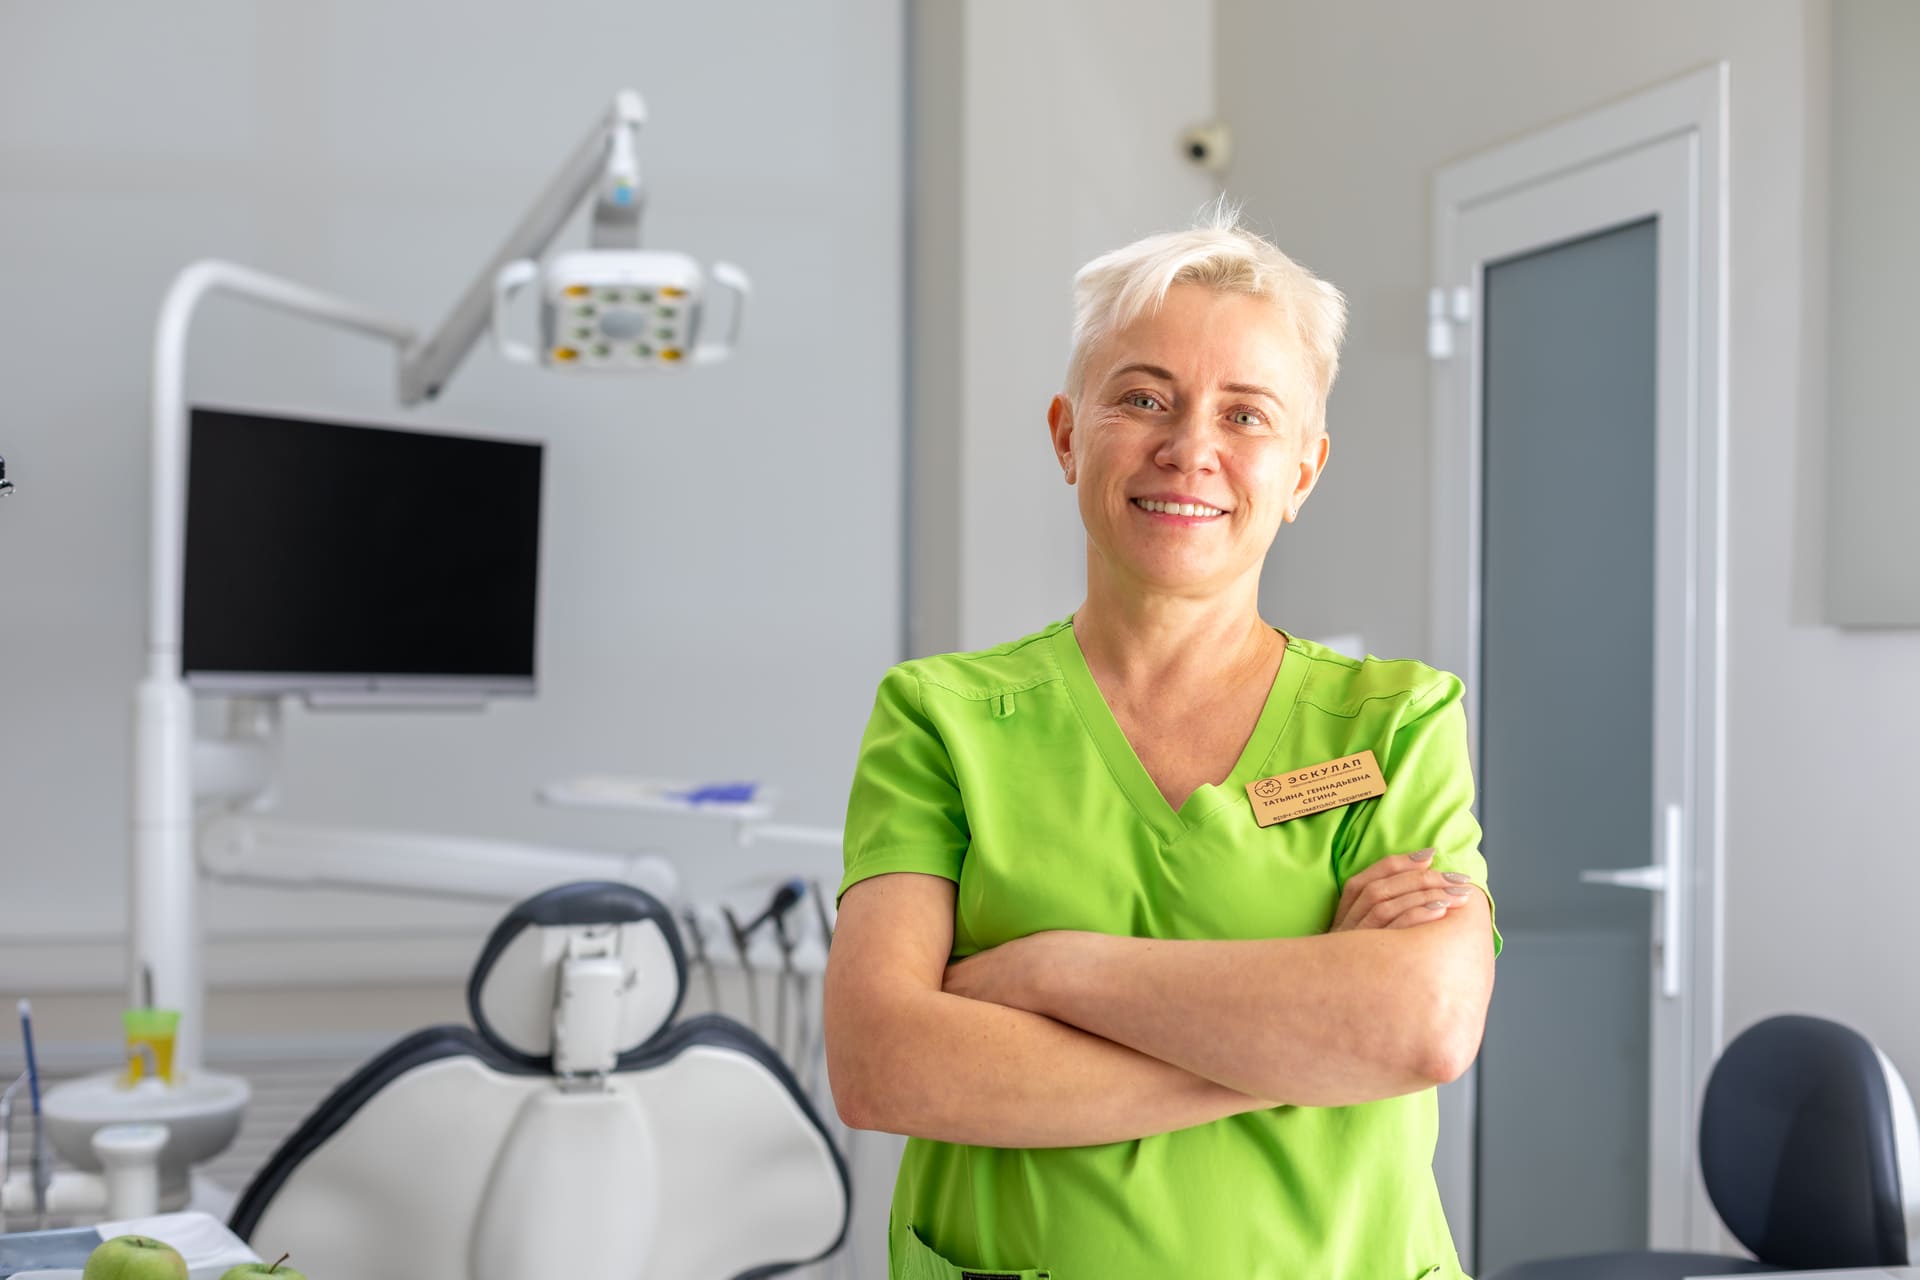 Вакансия: врач-стоматолог